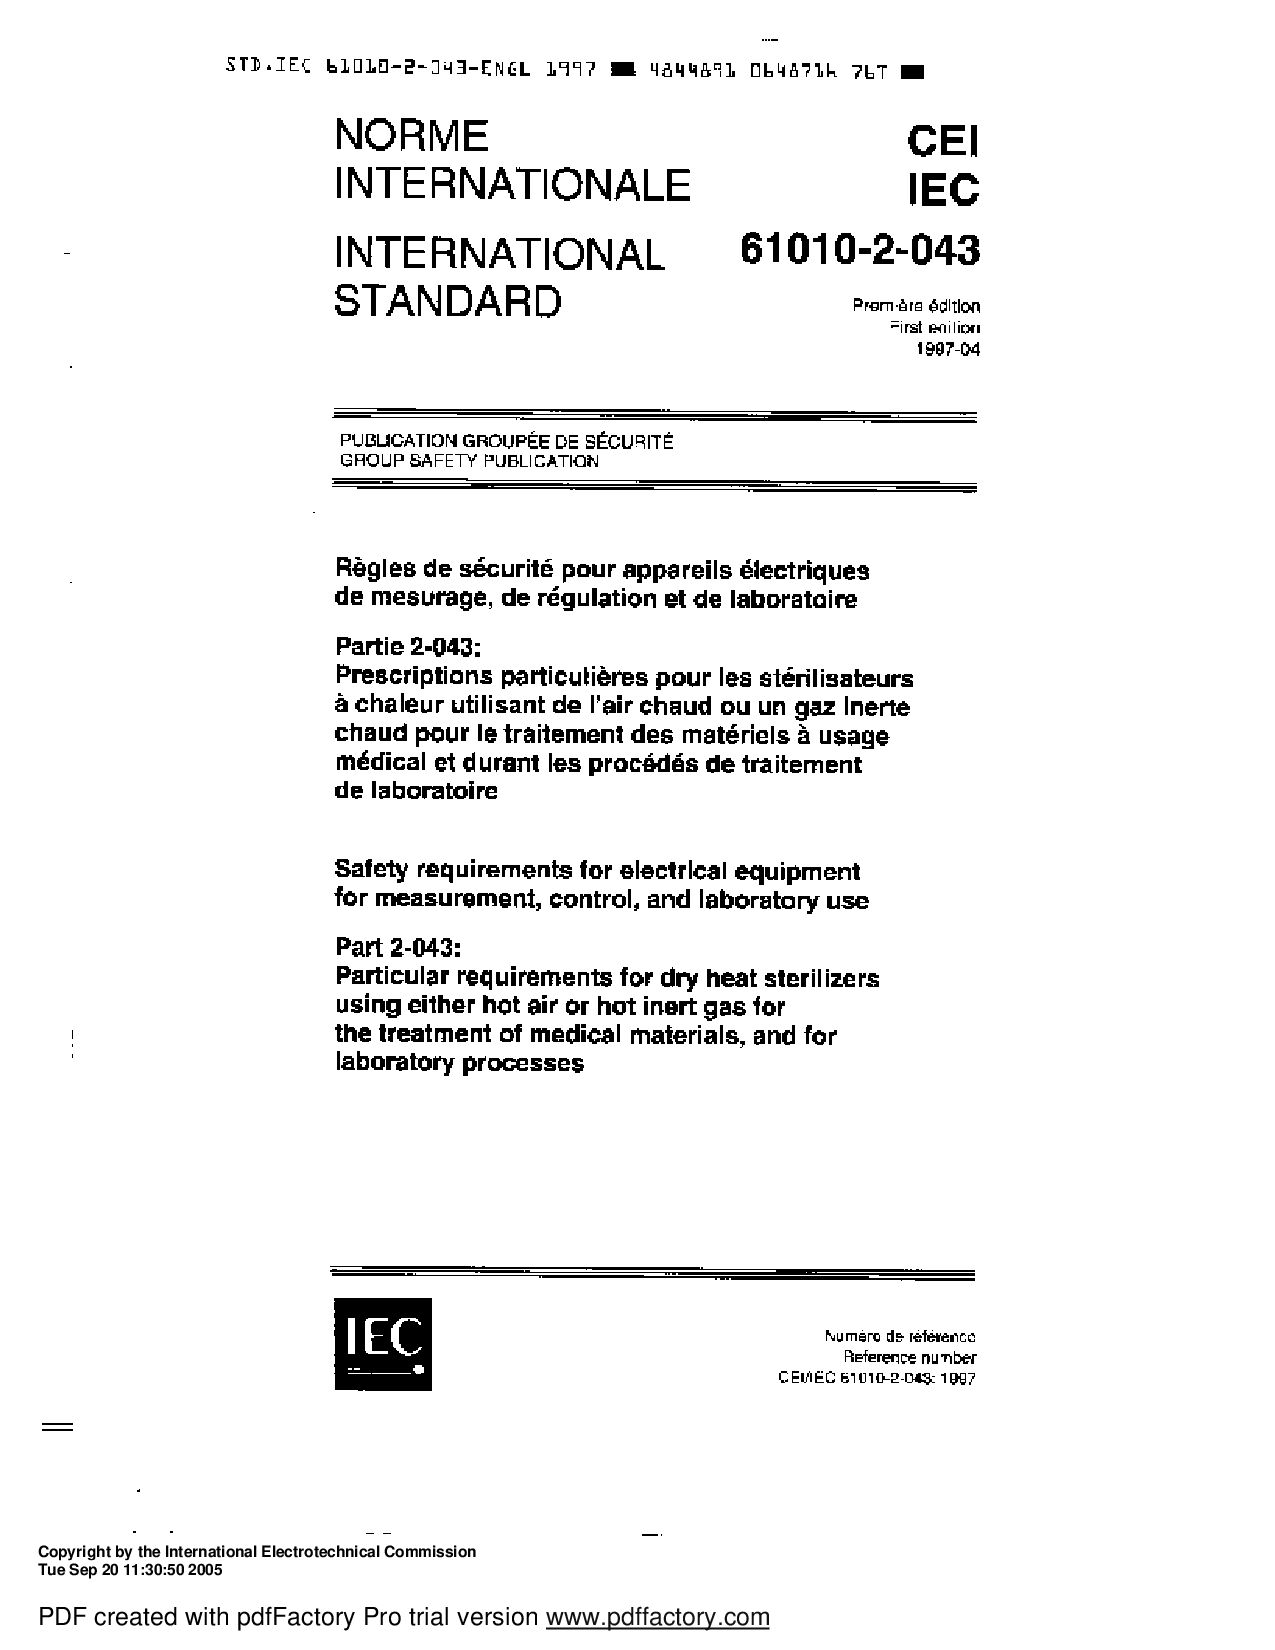 IEC 61010-2-043-1997